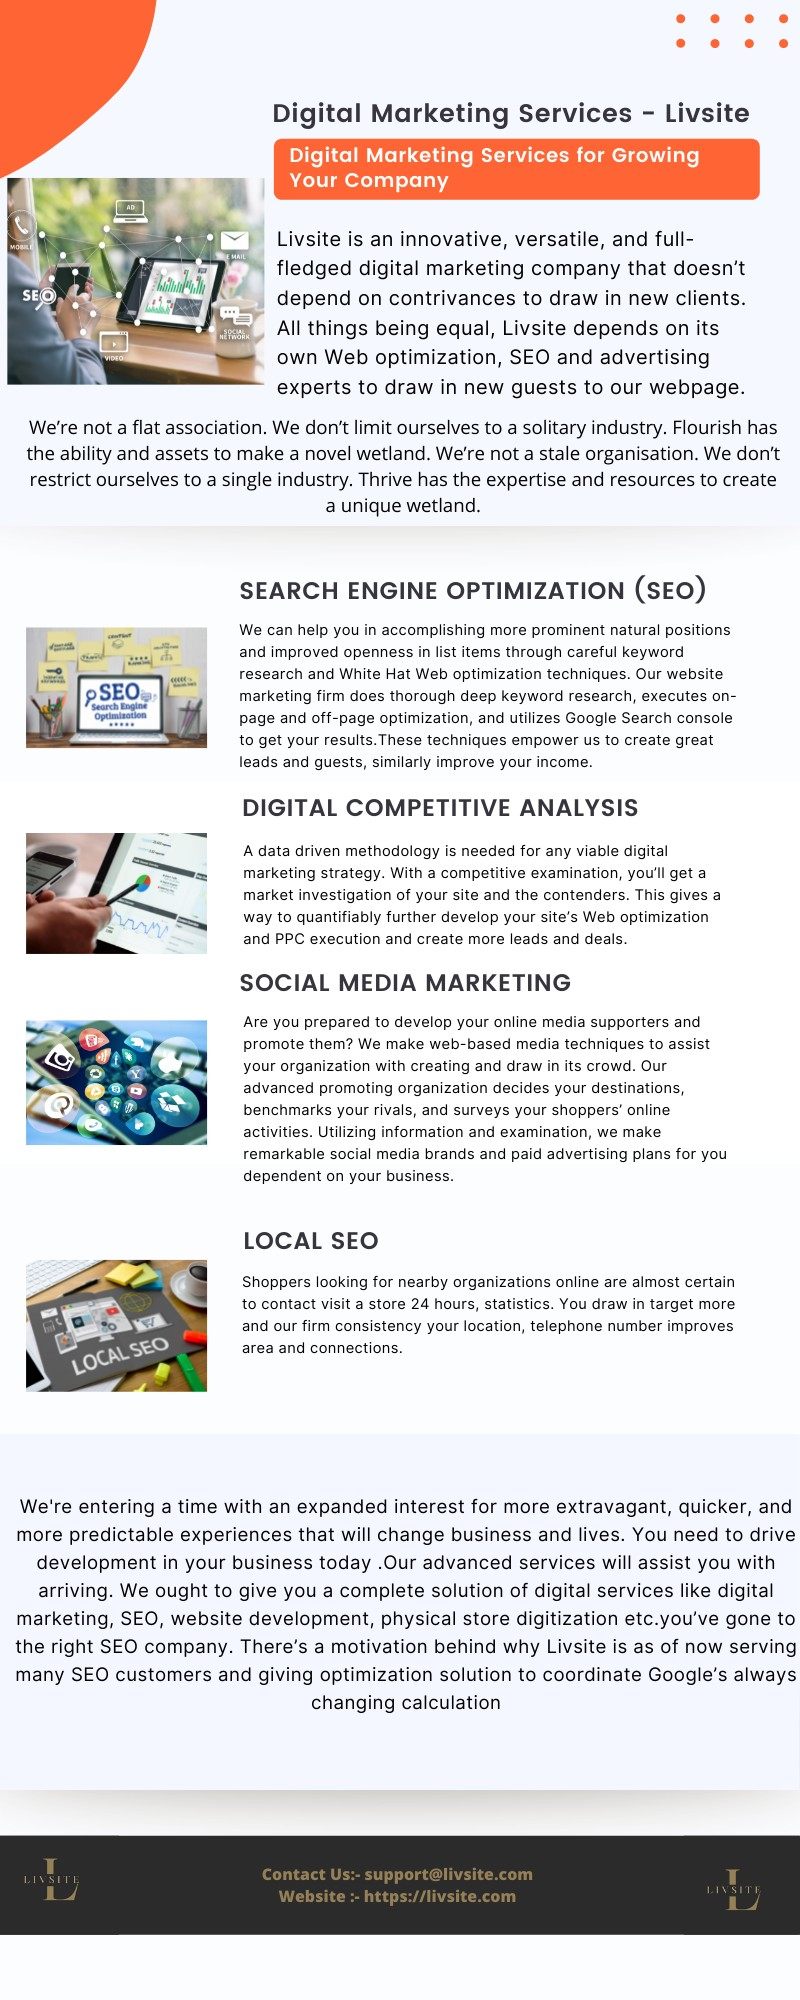 Digital Marketing Services - Livsite